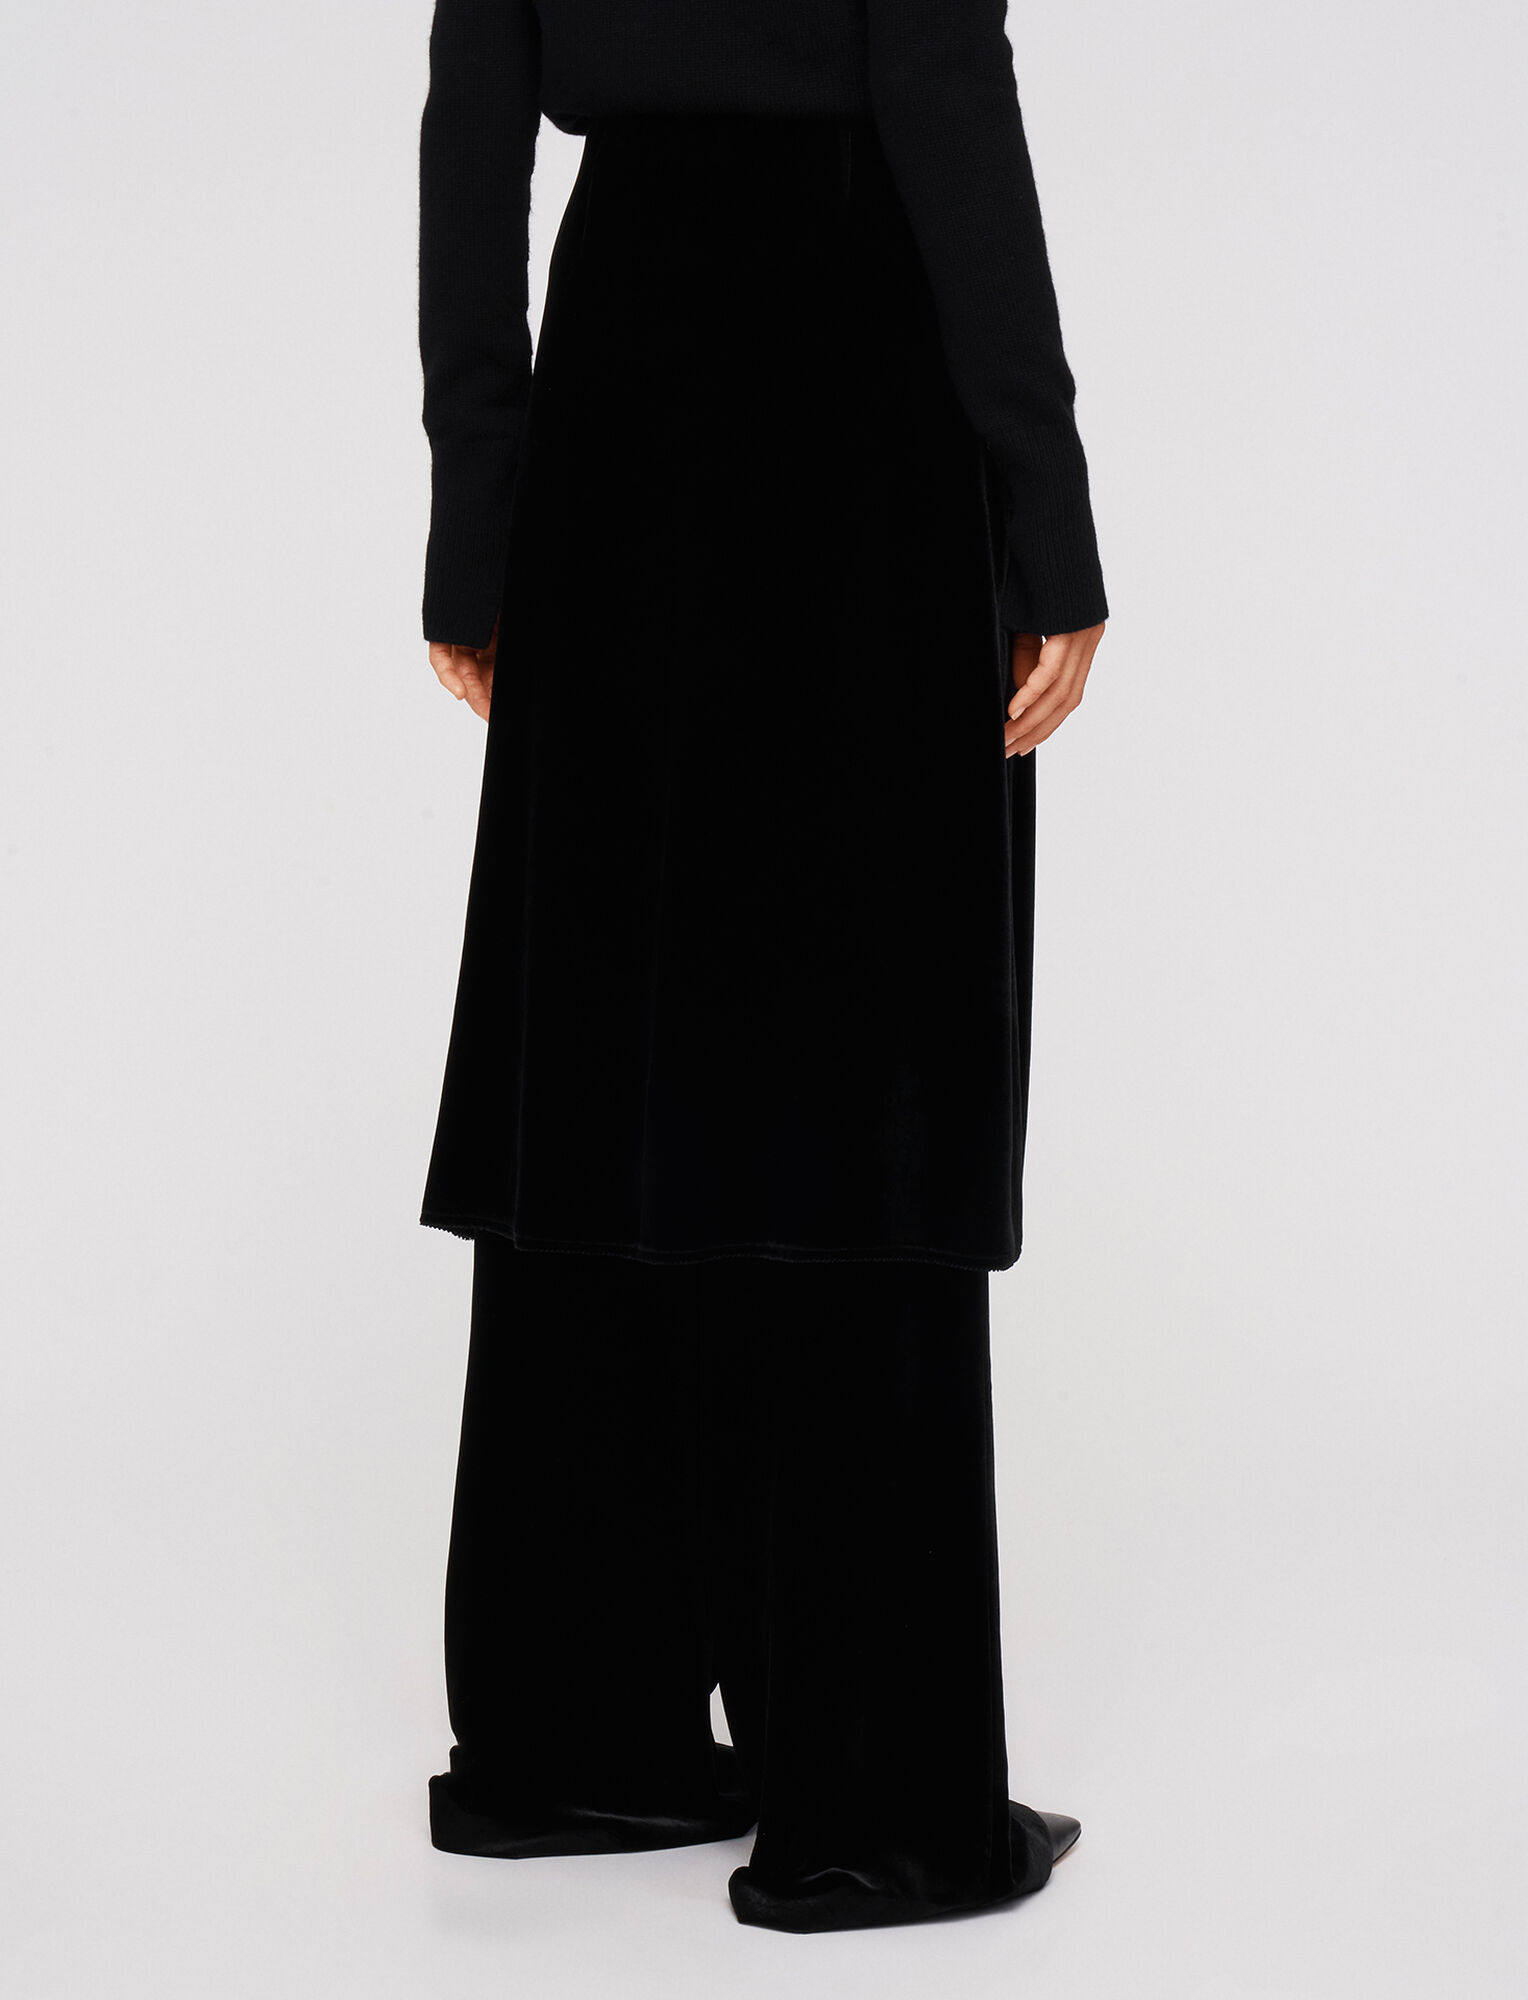 Joseph, Drapy Velvet Sabra Skirt, in Black